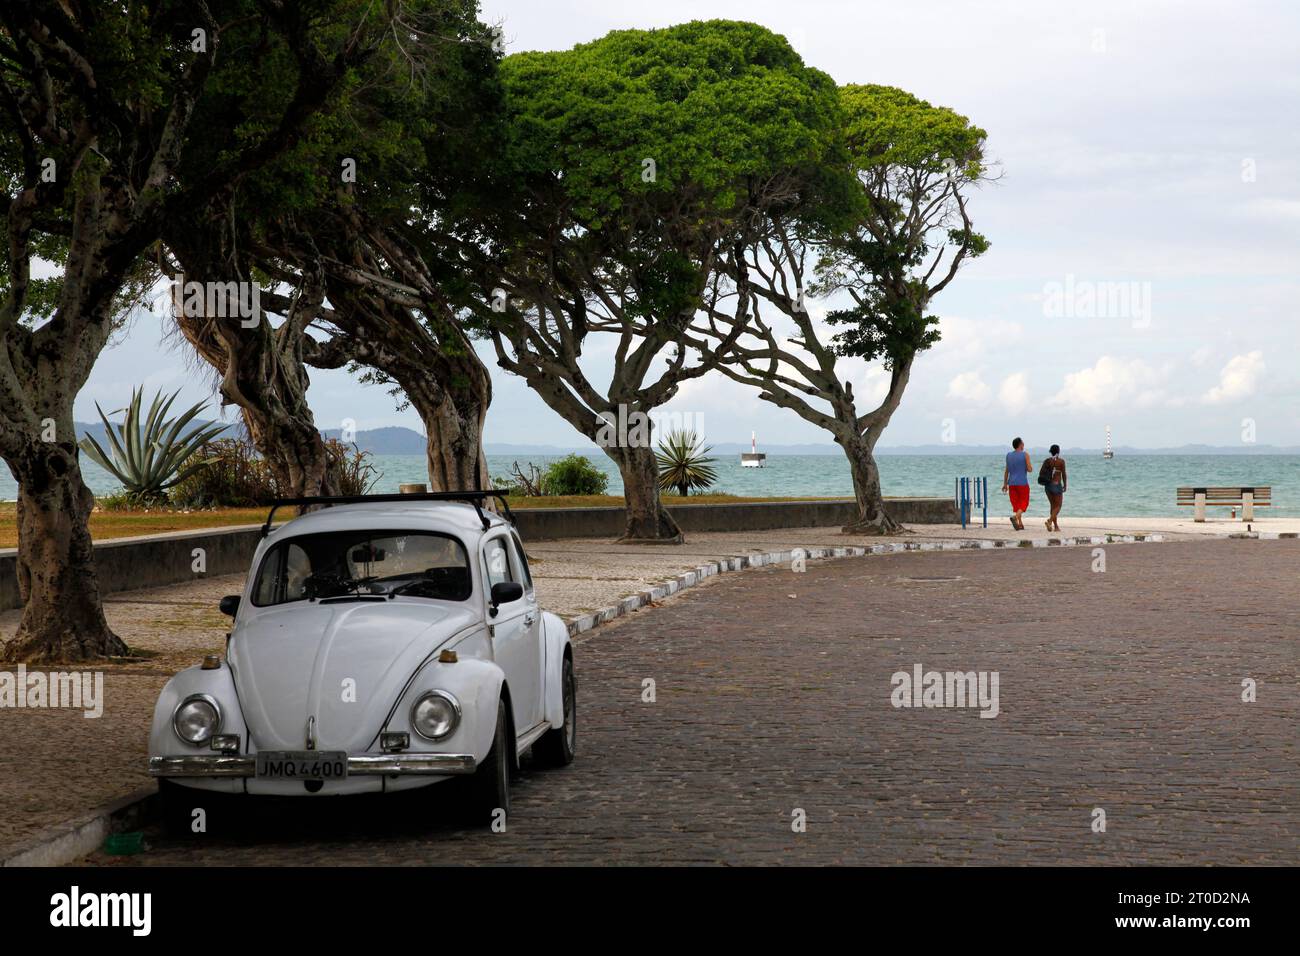 Street scene in Itaparica city, Itaparica Island near Salvador, Bahia, Brazil. Stock Photo